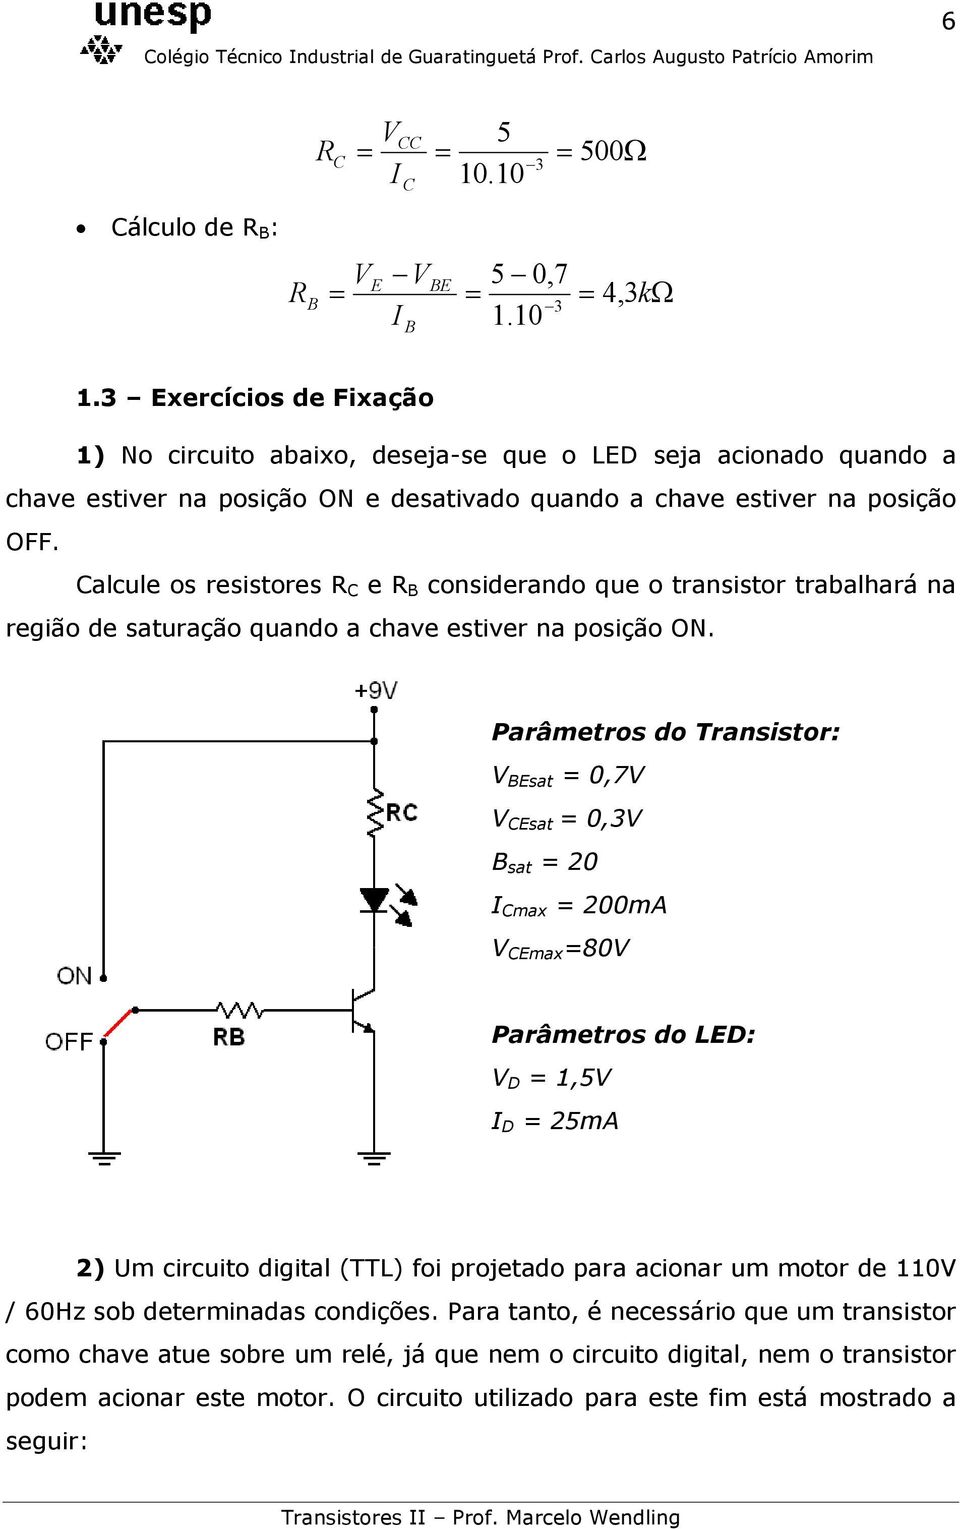 Calcule os resistores R C e R B considerando que o transistor trabalhará na região de saturação quando a chave estiver na posição ON.